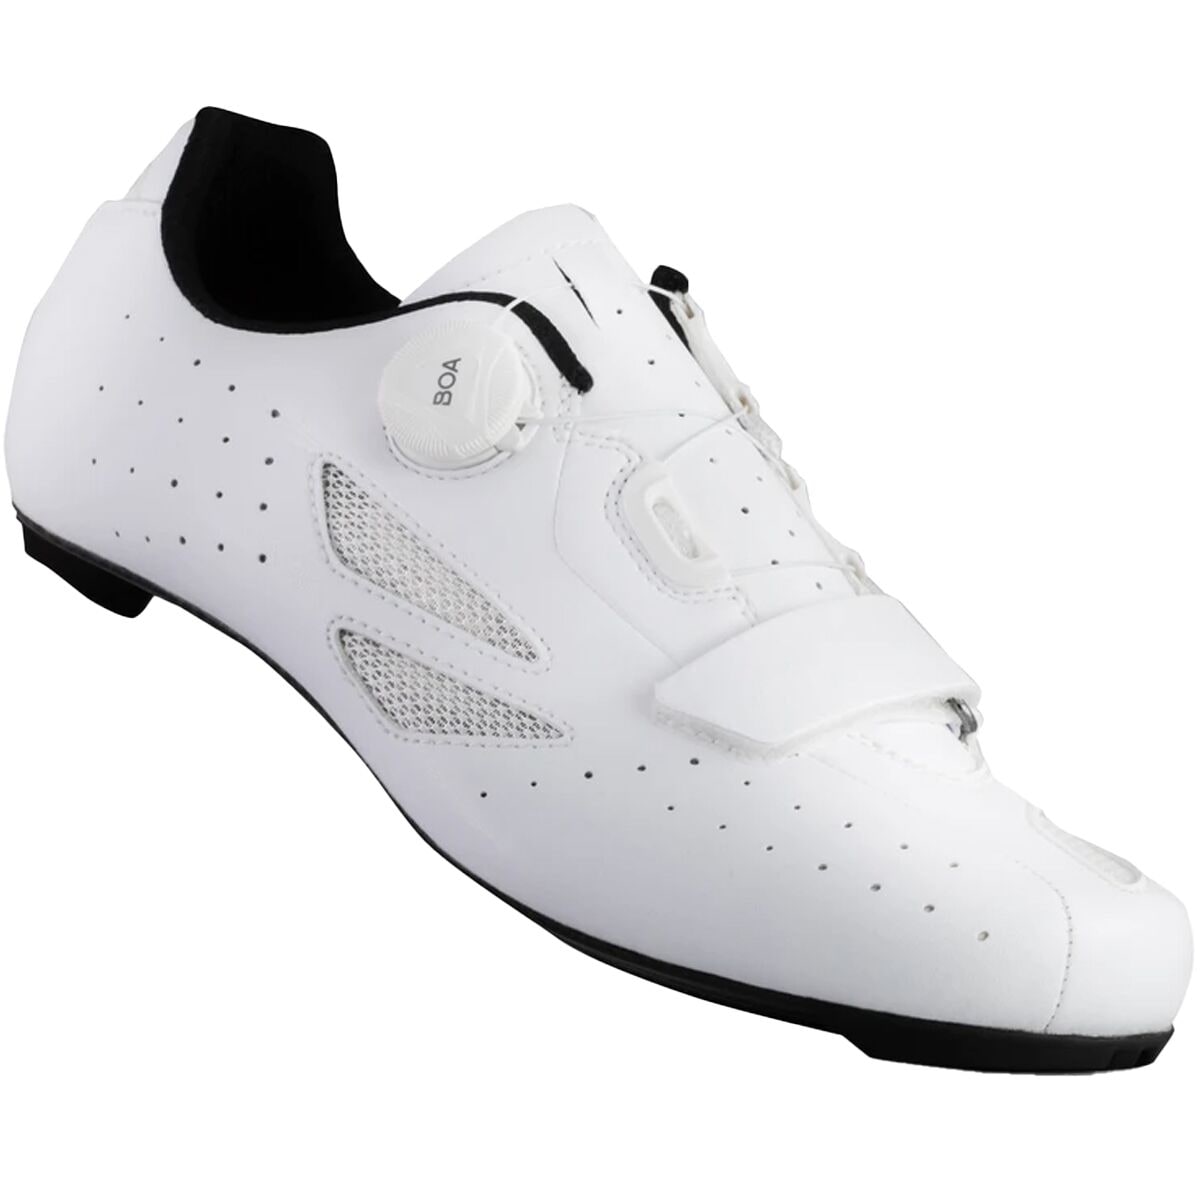 Lake CX218 Black/White Cycling Road Shoes Choose Size US Men's 9 10 11 or 12 